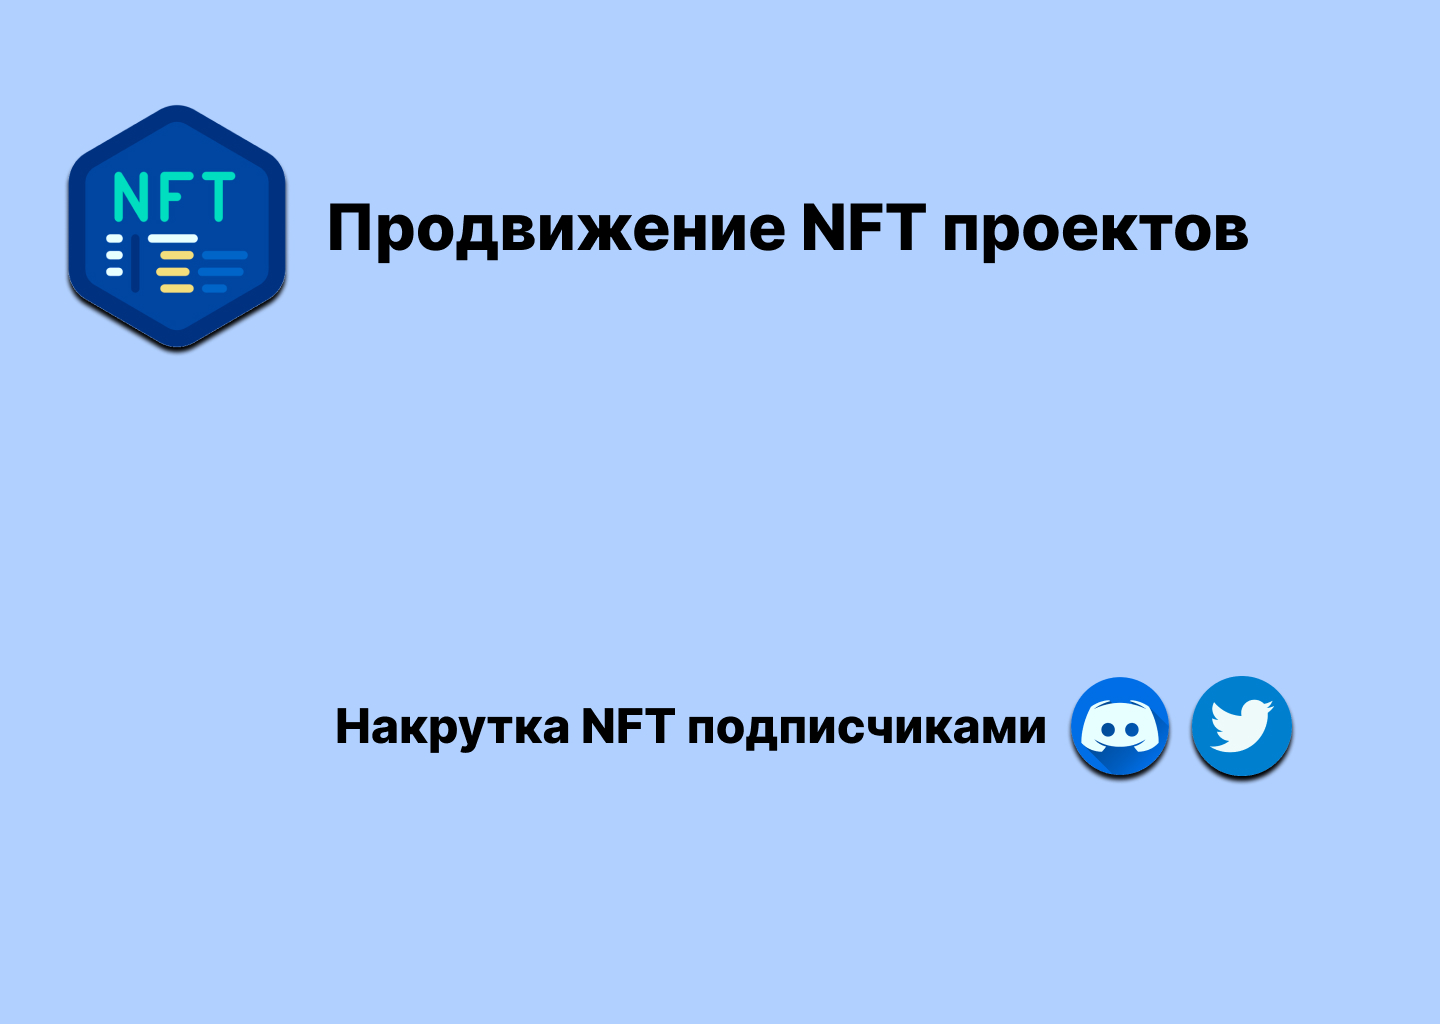 Продвижение NFT в Twitter и Discord - услуги, способы